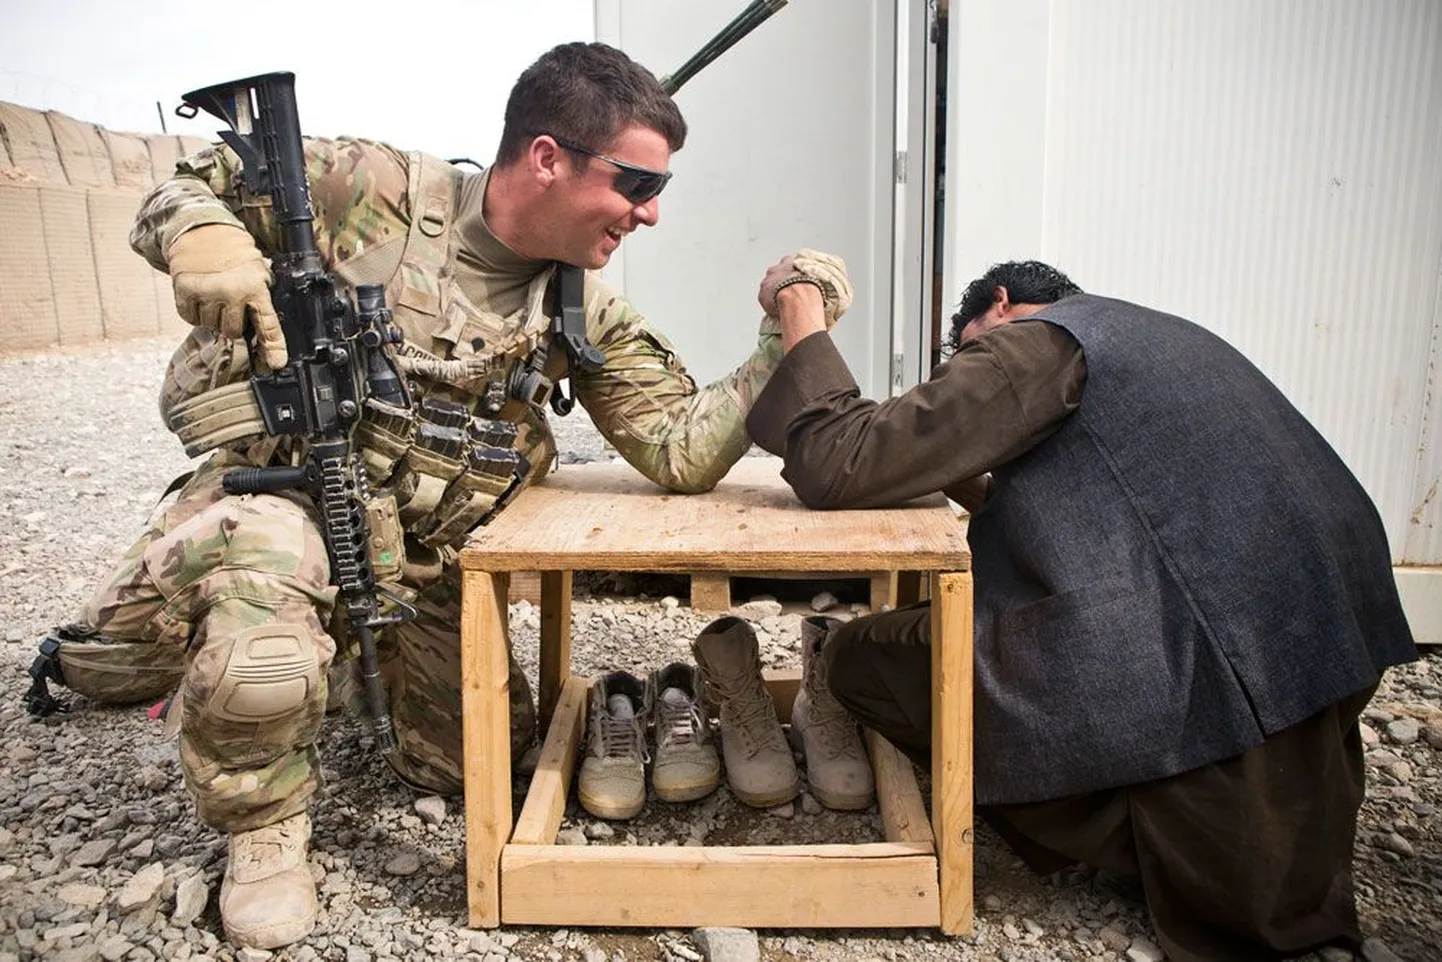 USA maaväe sõdur ja Afganistani politseinik jaanuaris Kandahari provintsis kätt surumas. Järgmise aasta lõpuks võtavad afgaanid võõrvägedelt üle kogu vastutuse julgeoleku tagamise eest. Neid jääb ilmselt nõustama 8000 – 12 000 koalitsioonisõdurit.